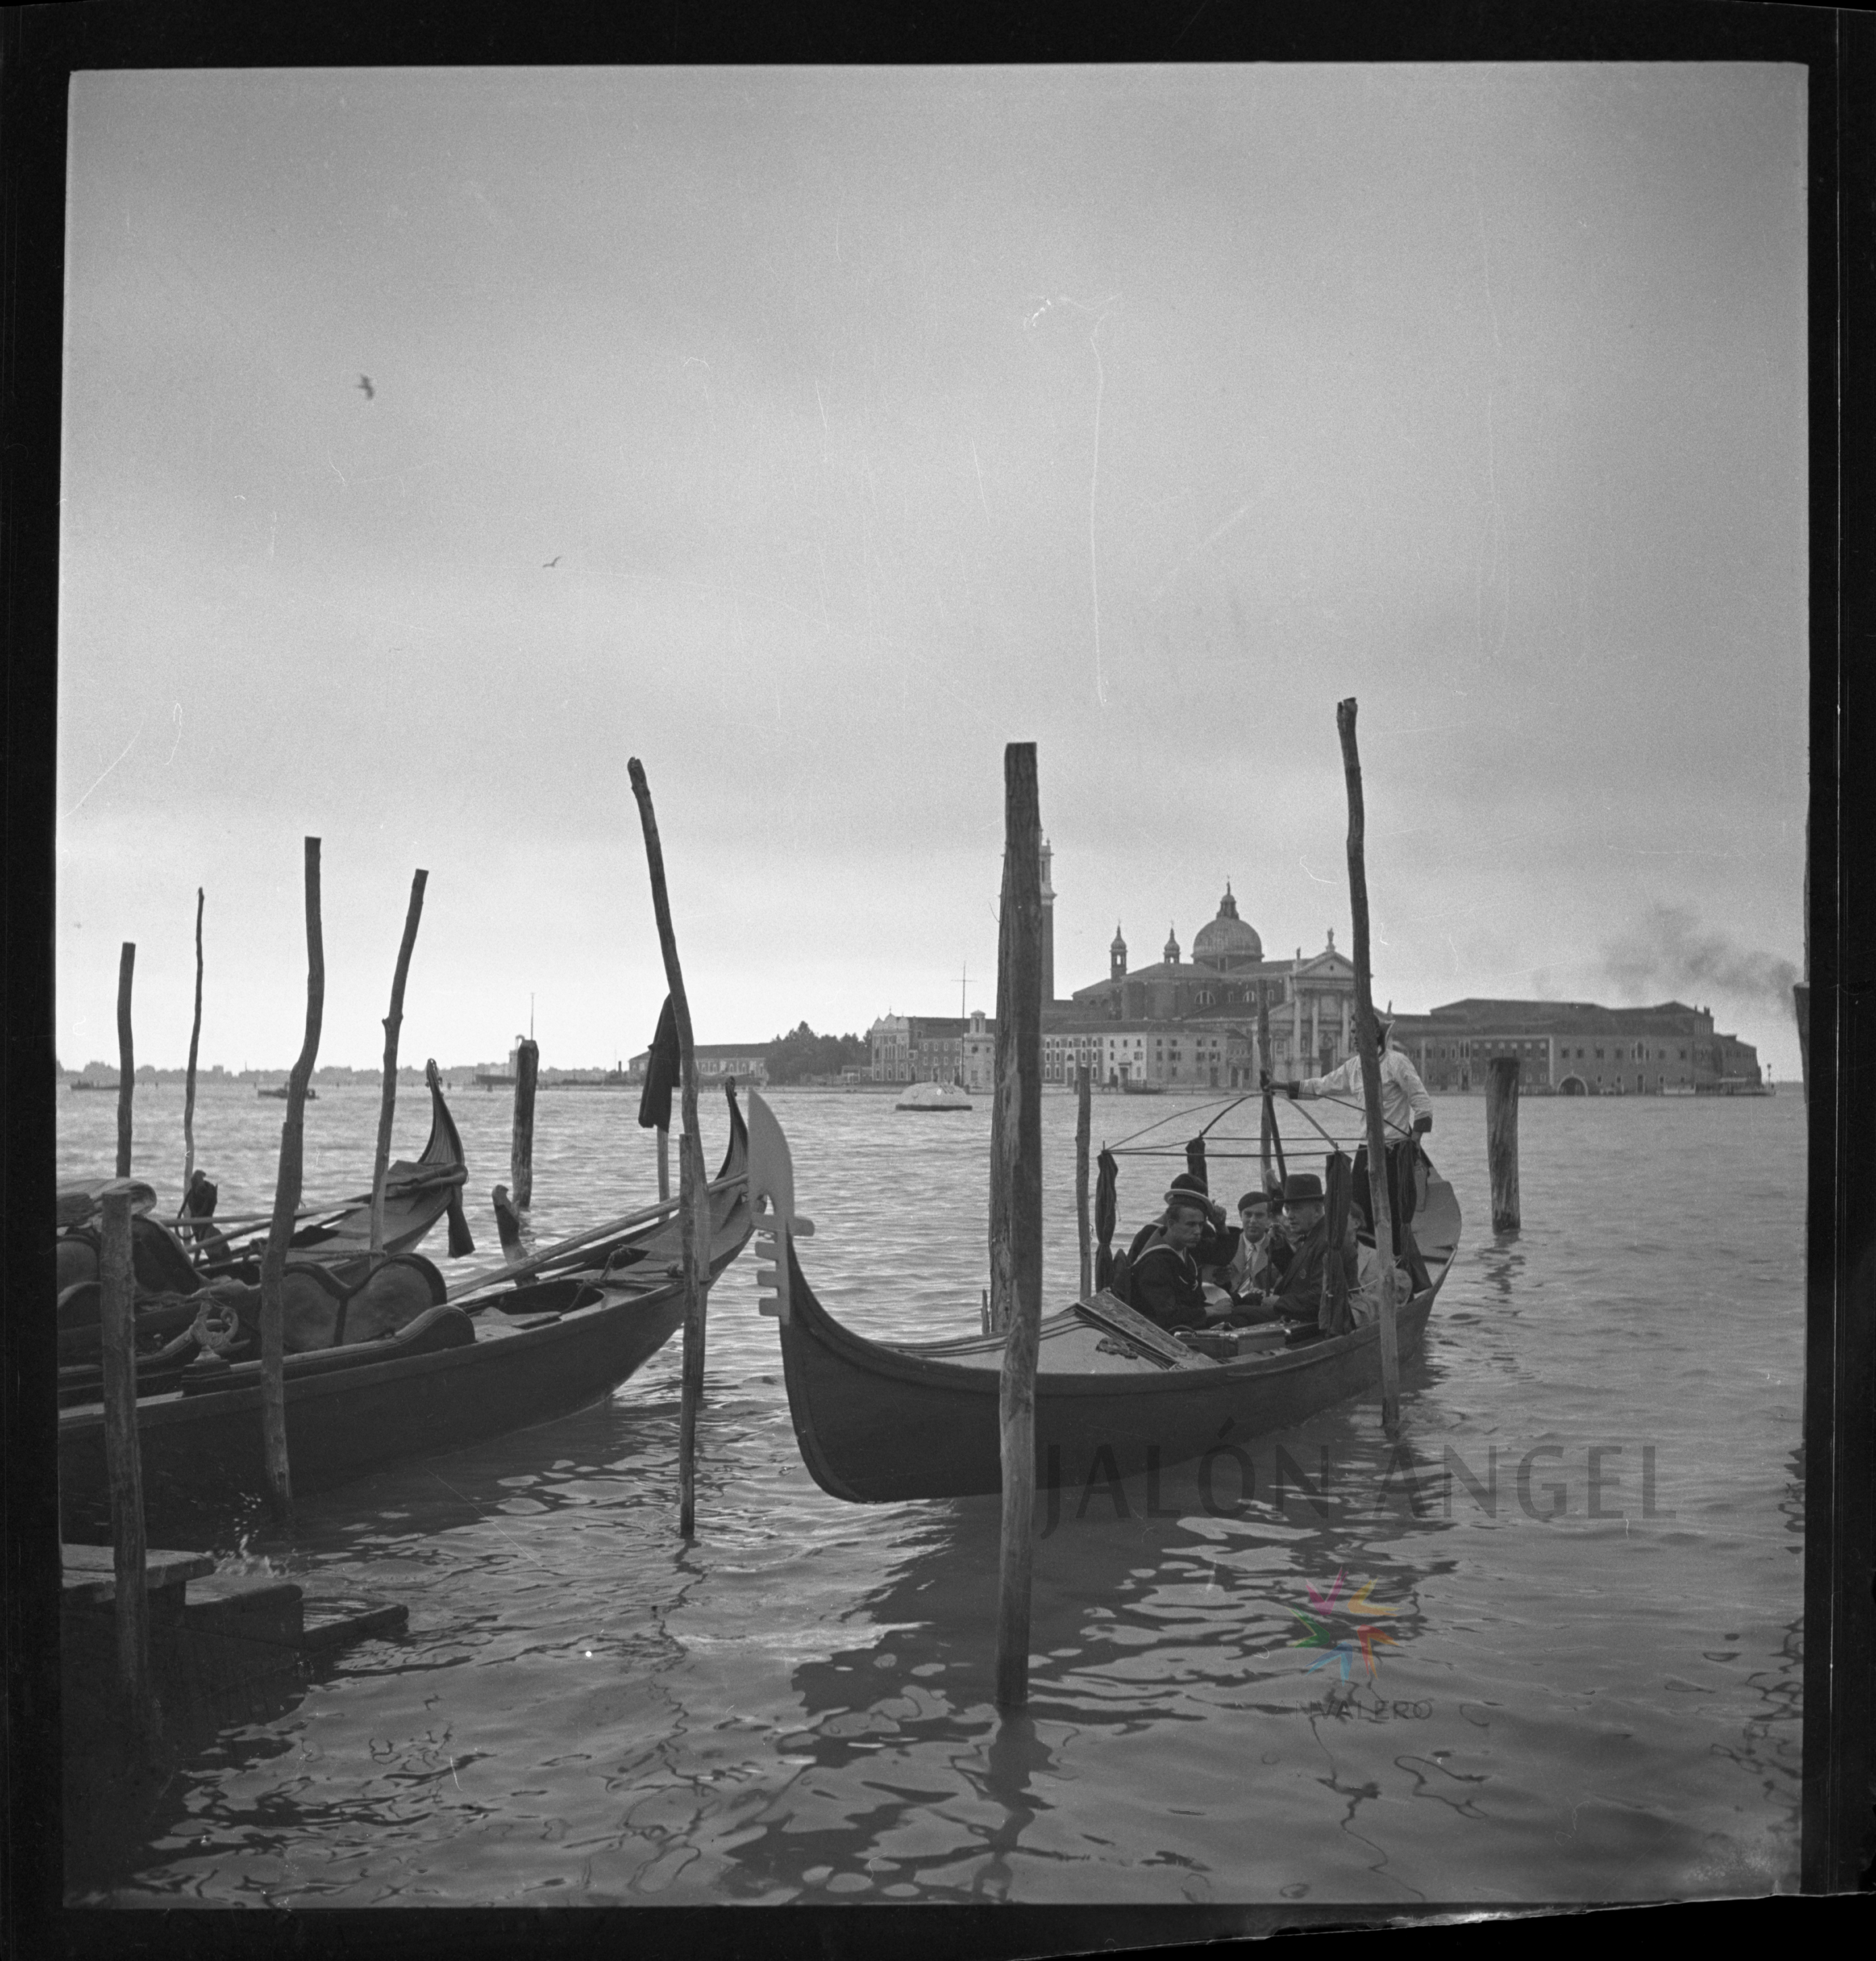 Fotografía de Venecia realizada por Jalón Ángel